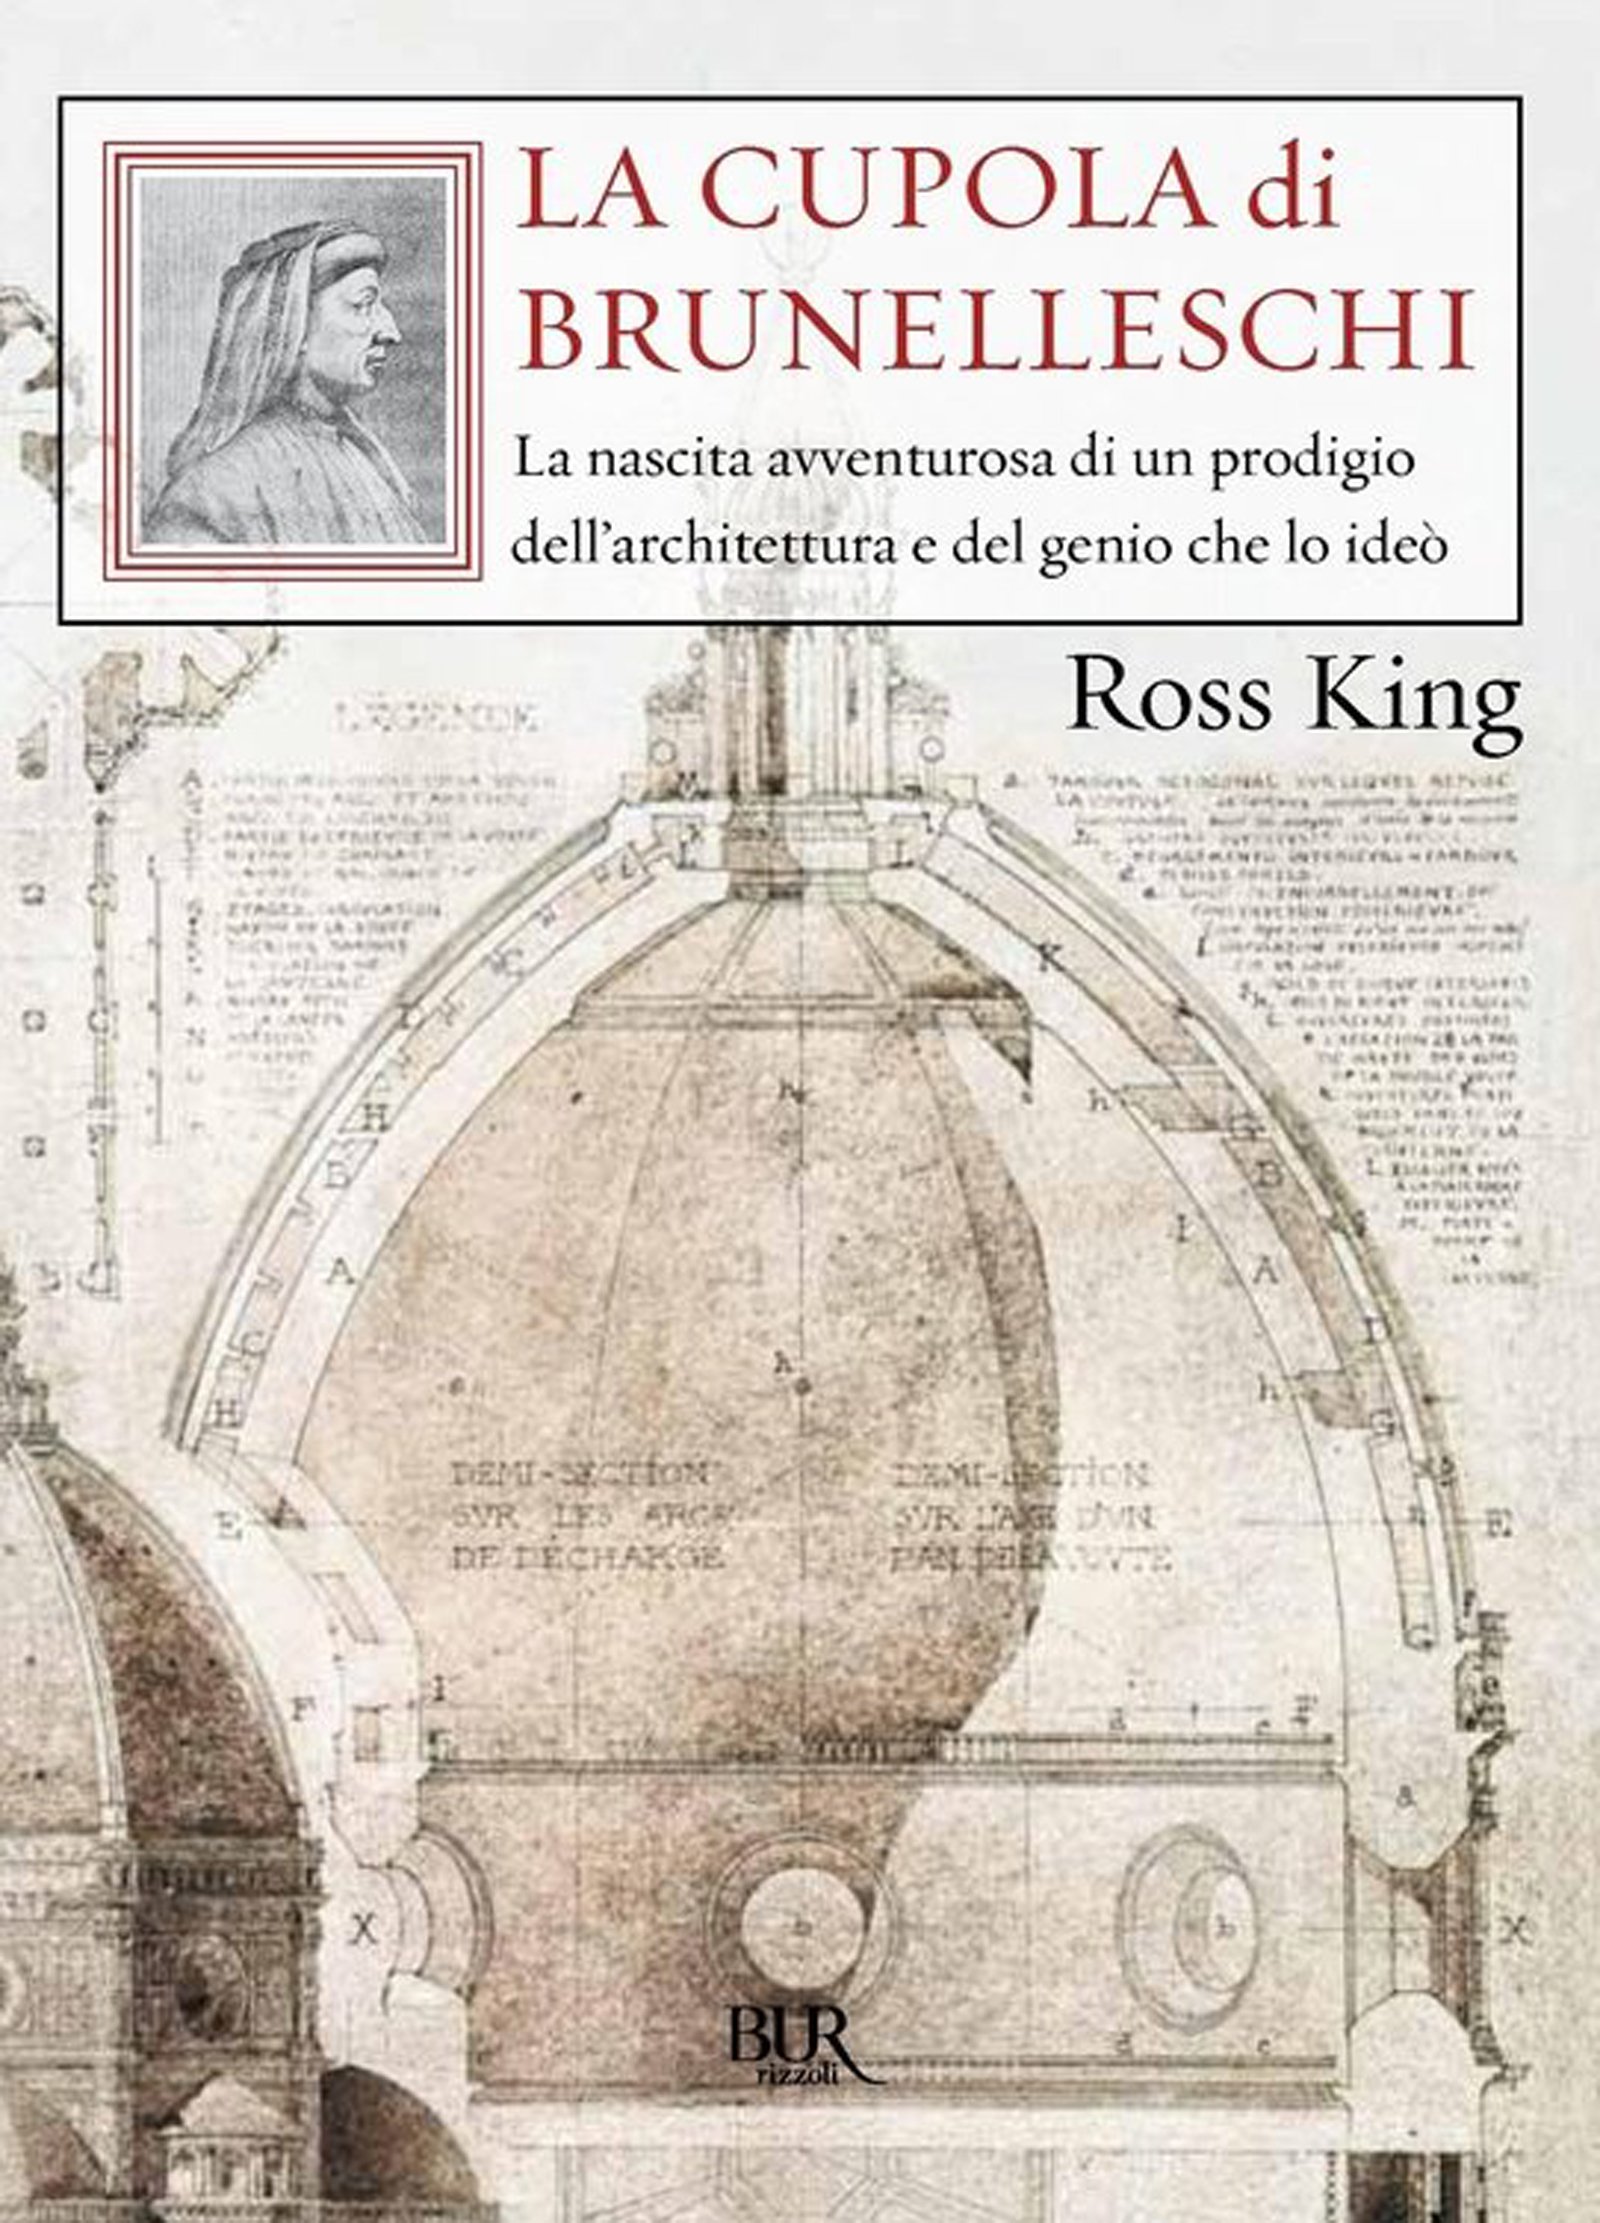 La cupola di Brunelleschi: La nascita avventurosa di un prodigio dell'architettura e del genio che lo ideò. (Saggi) (Italian Edition)